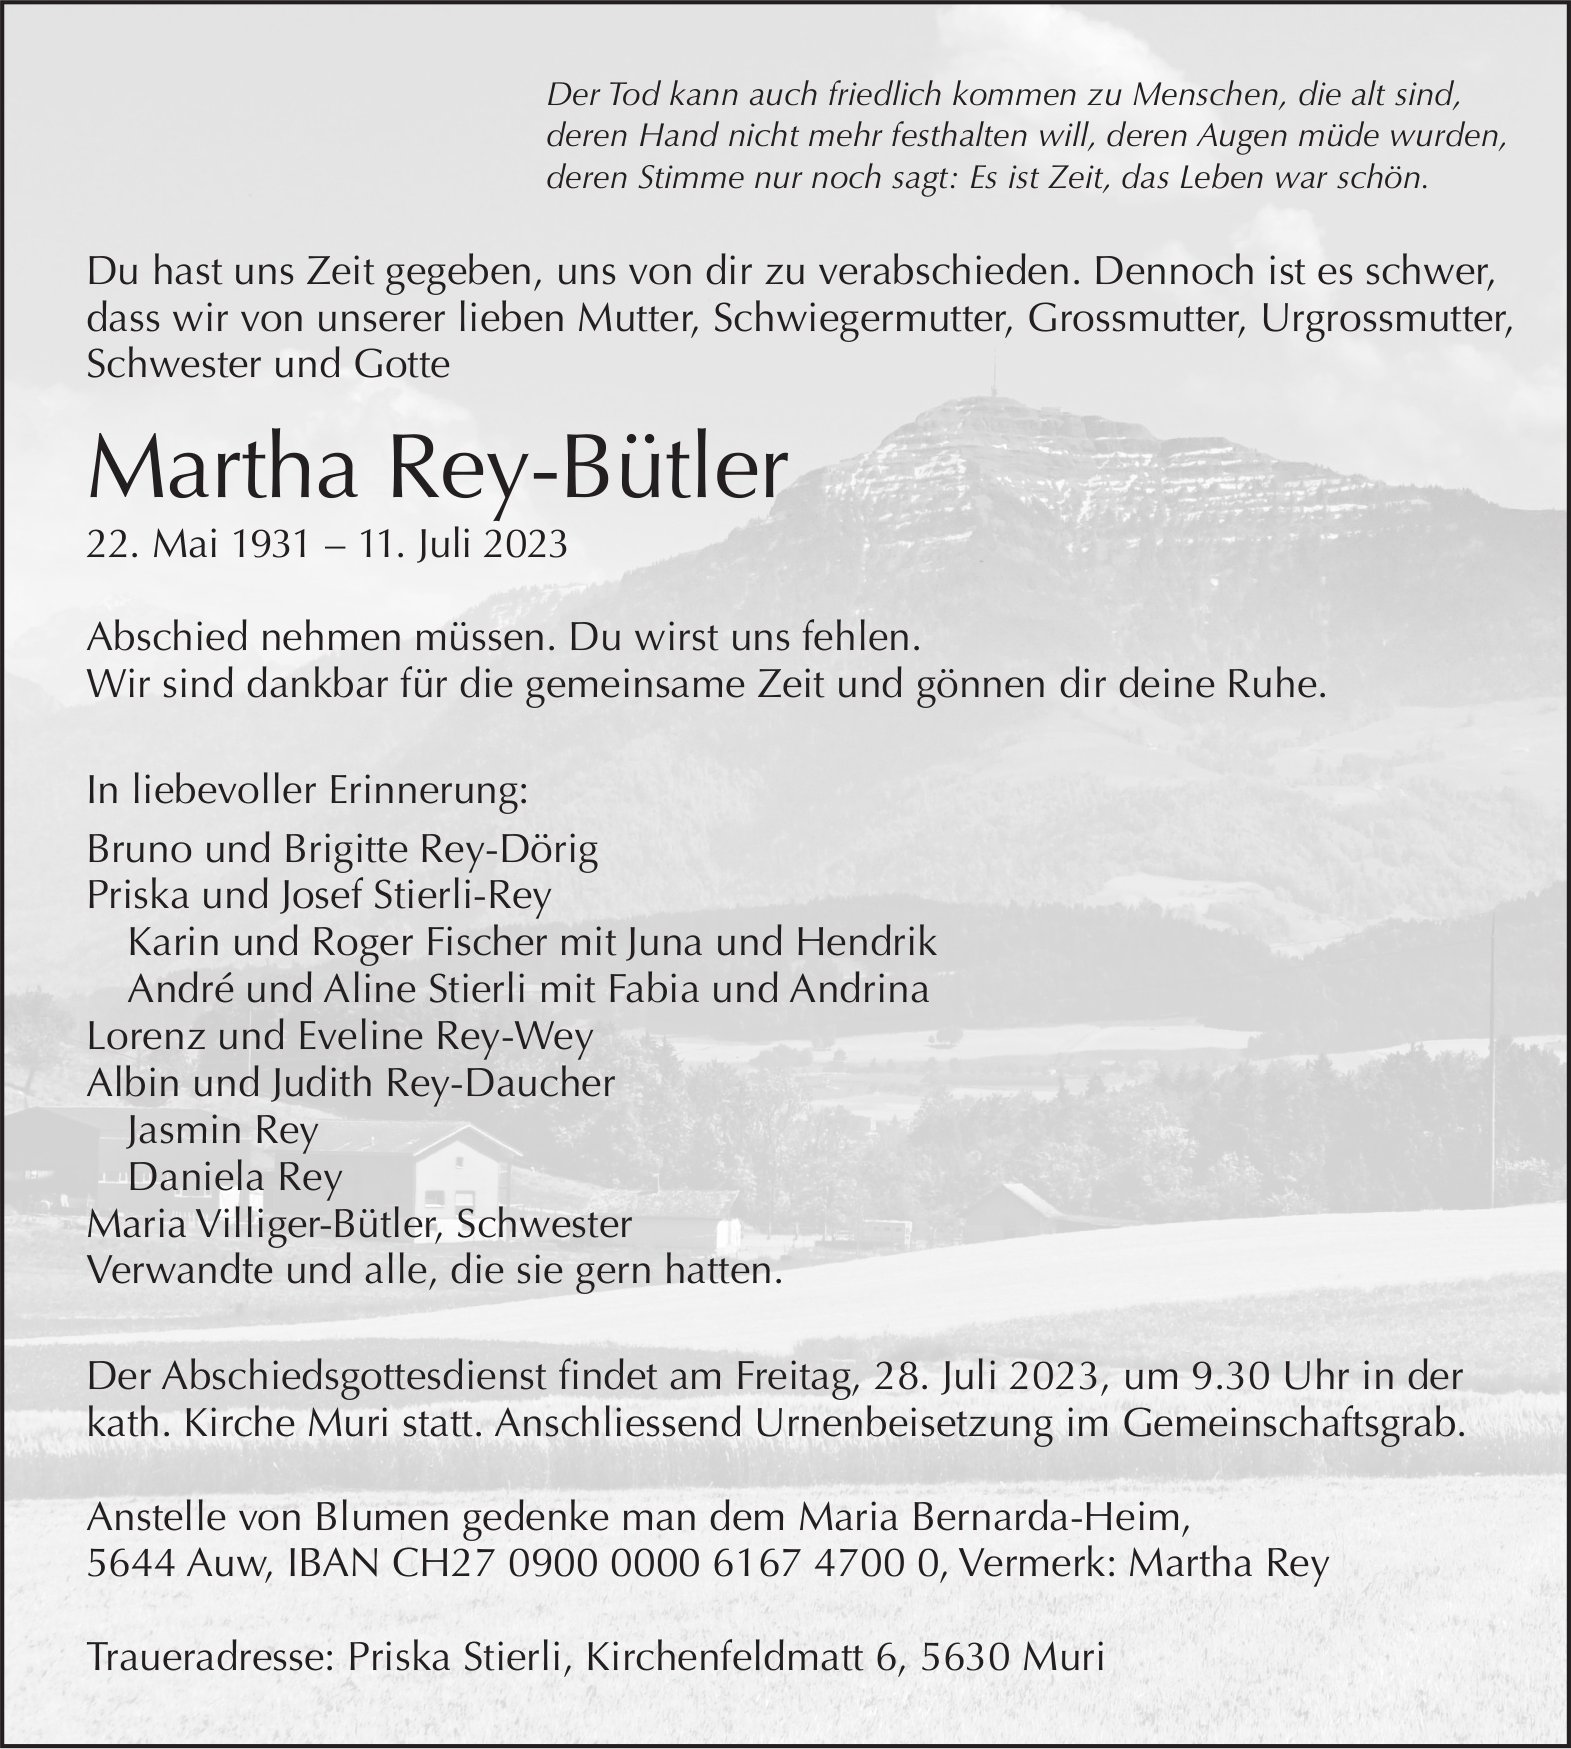 Rey-Bütler Martha, Juli 2023 / TA